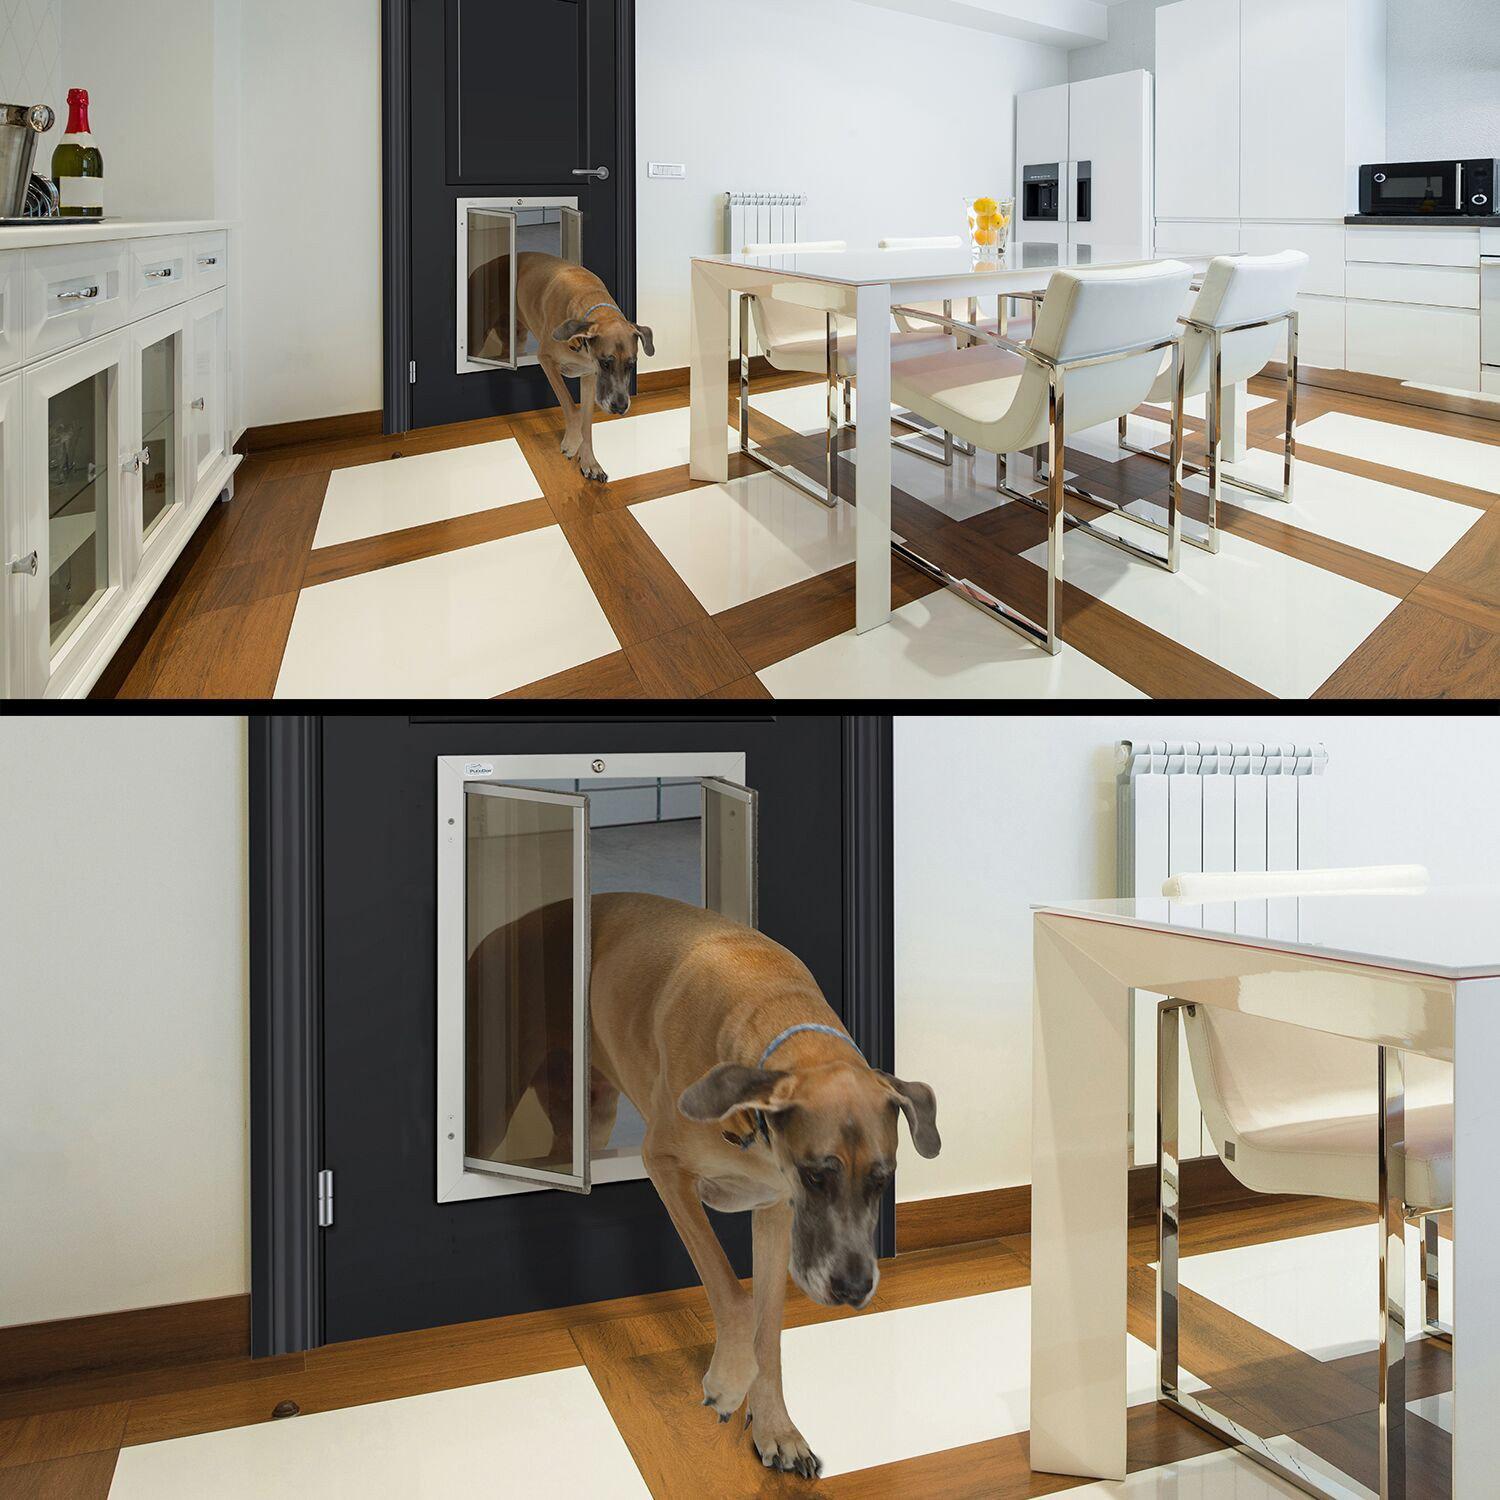 PlexiDor Performance Door Mount Installation Cat & Dog Door-Pet & Dog Doors-Pet's Choice Supply